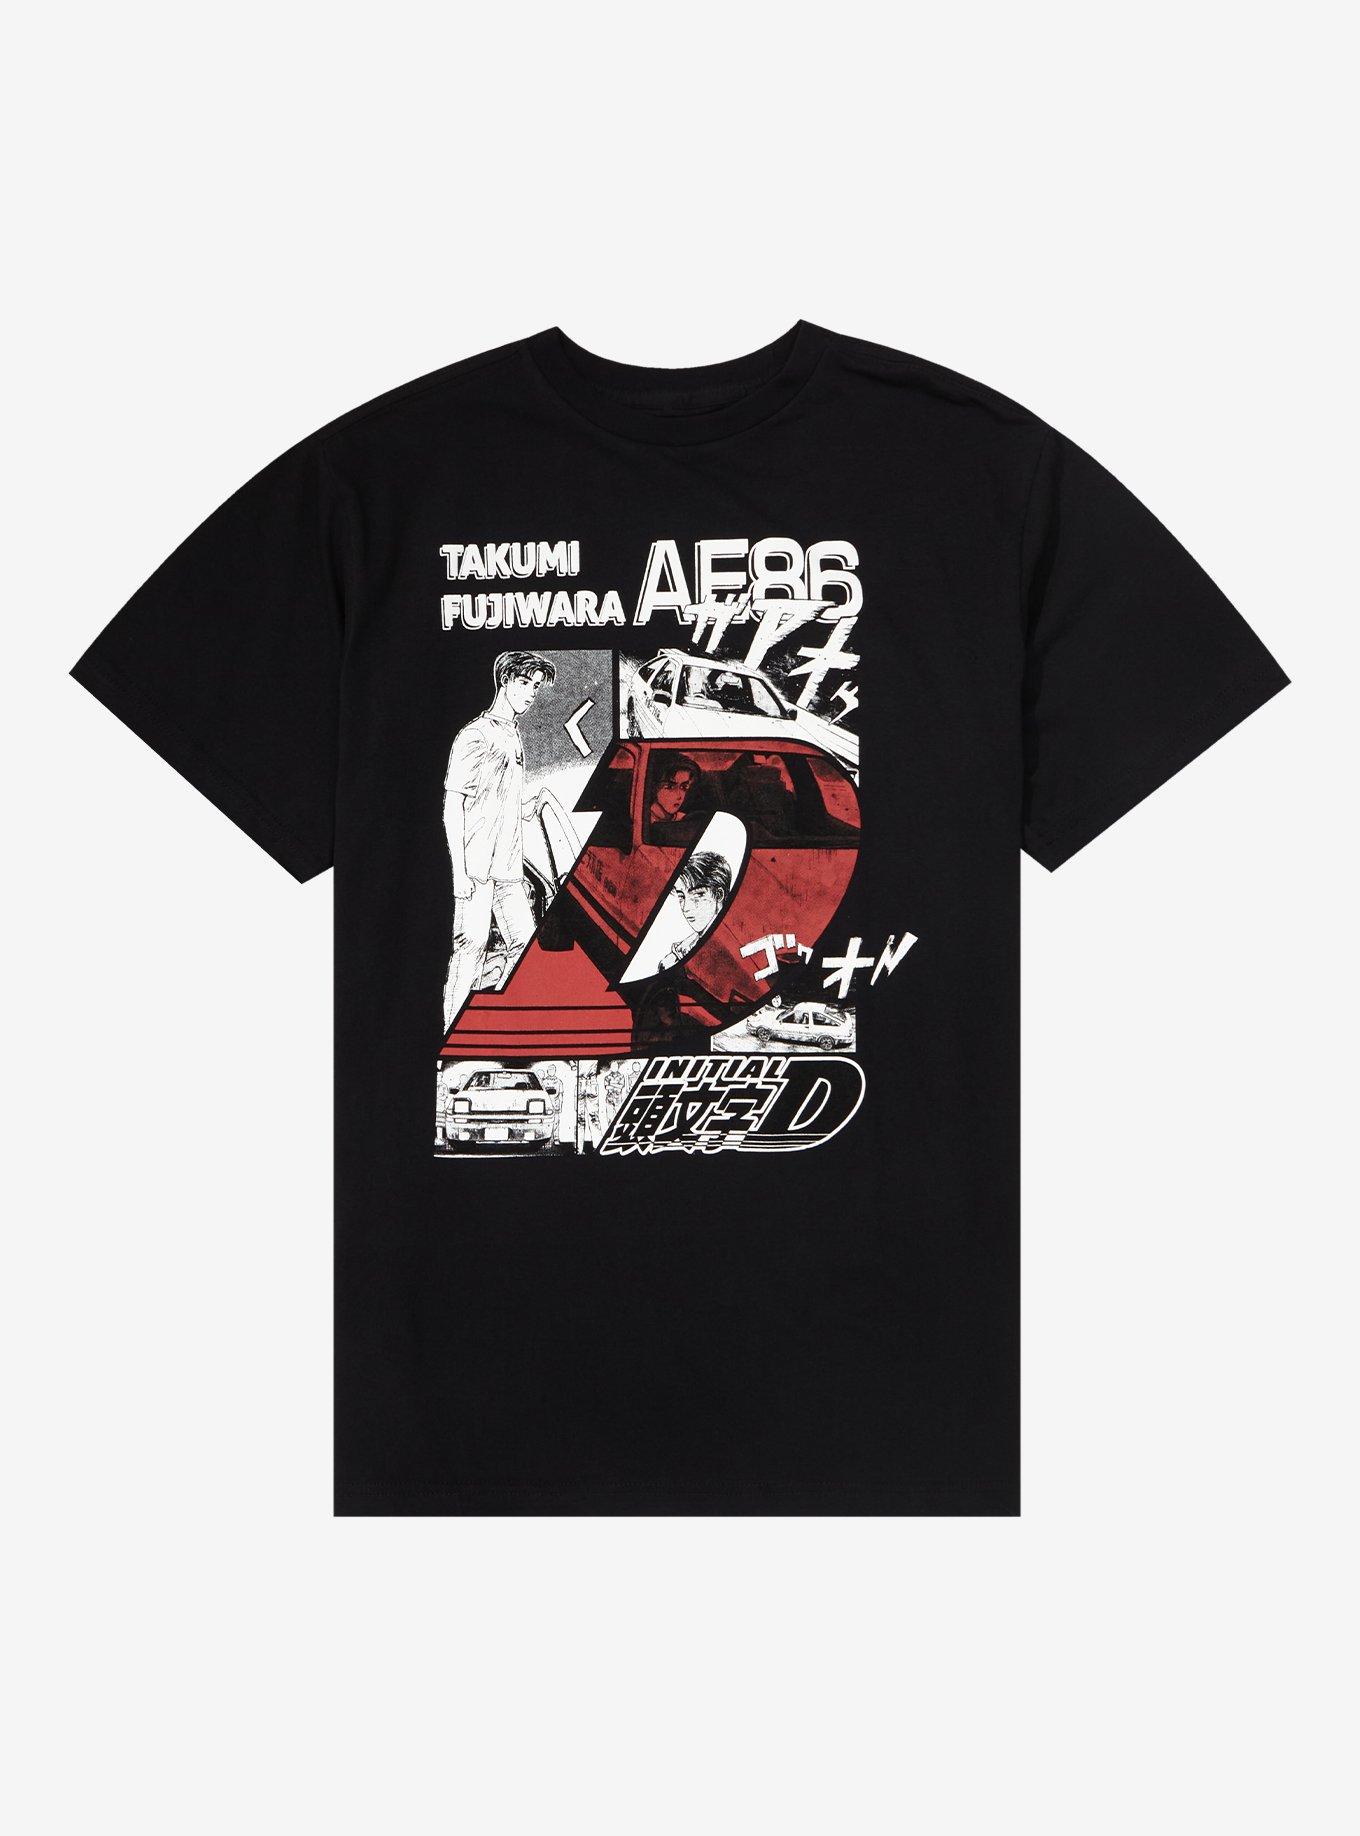 Initial D AE86 Takumi Fujiwara T-Shirt Hot Topic | lupon.gov.ph